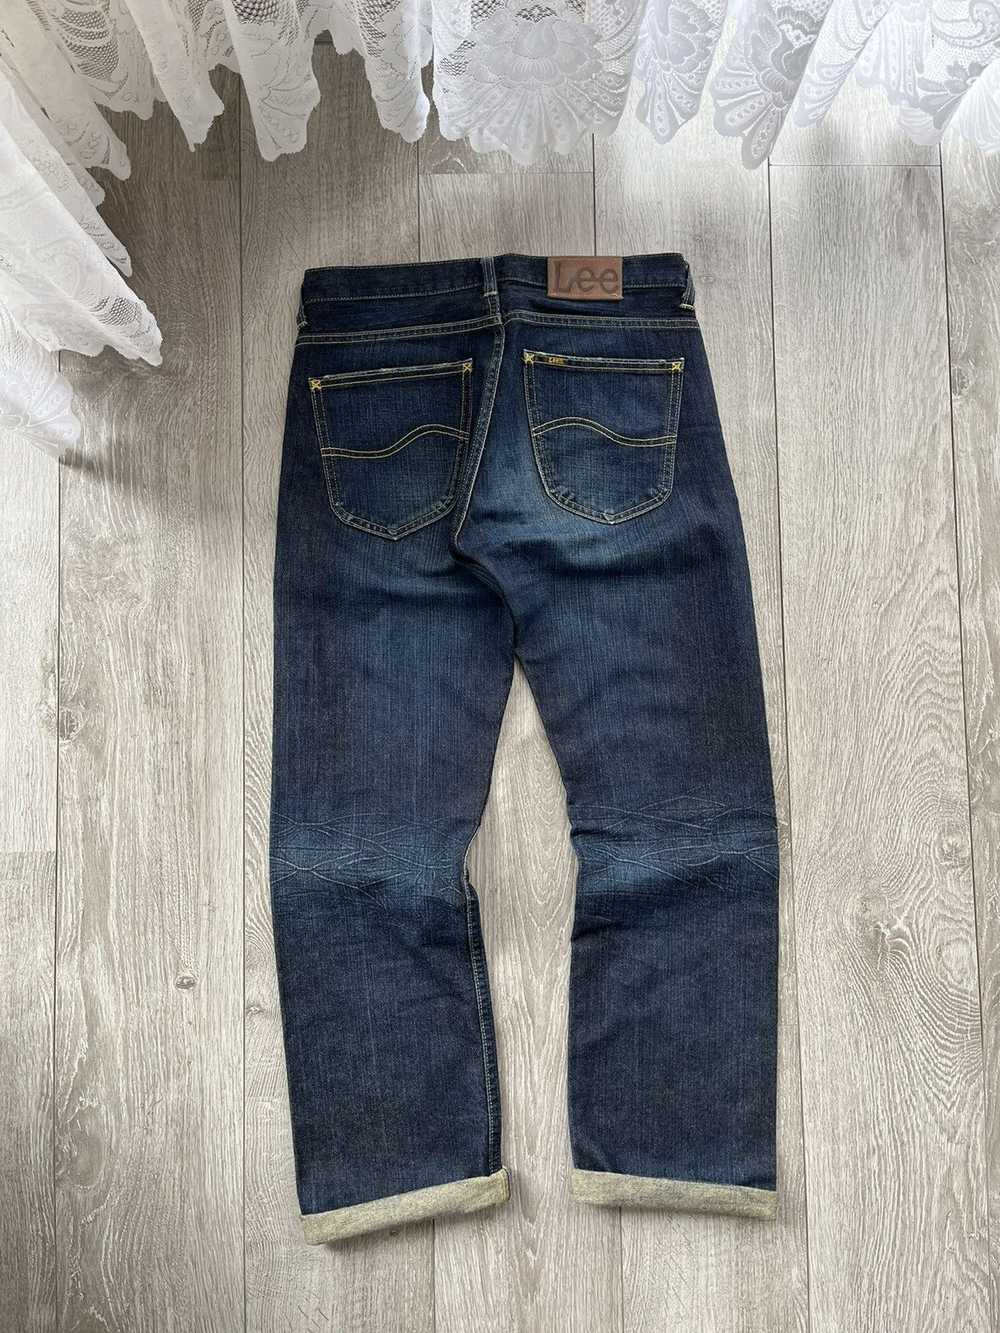 Avant Garde × Lee × Vintage Lee 101 B jeans pants… - image 10